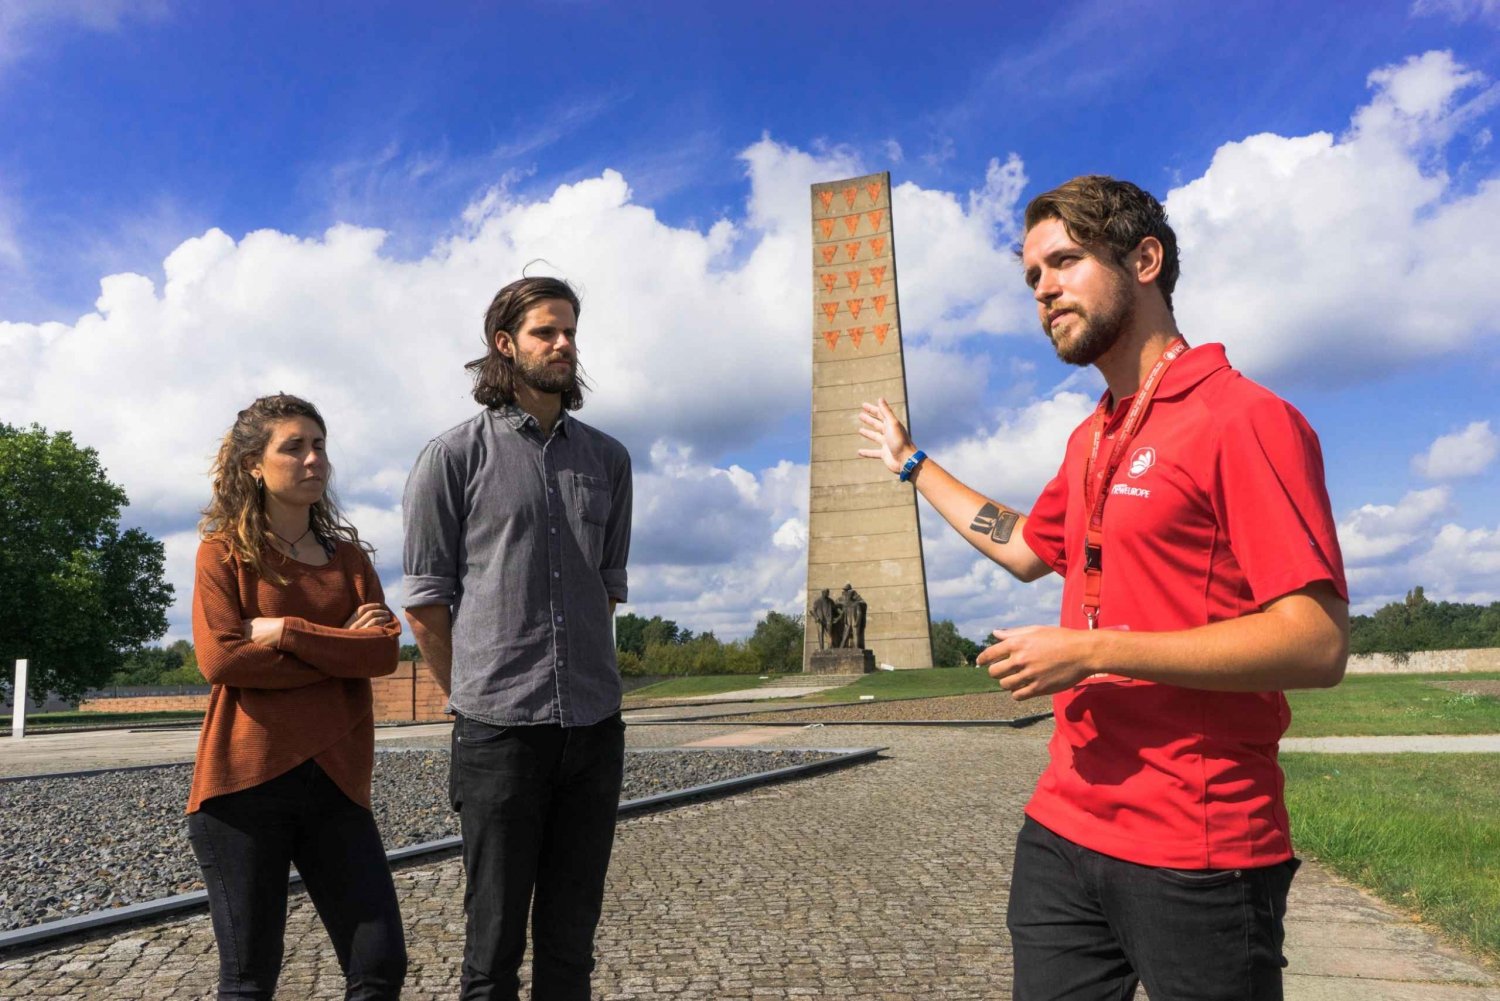 De Berlim: Excursão a pé pelo Memorial de Sachsenhausen